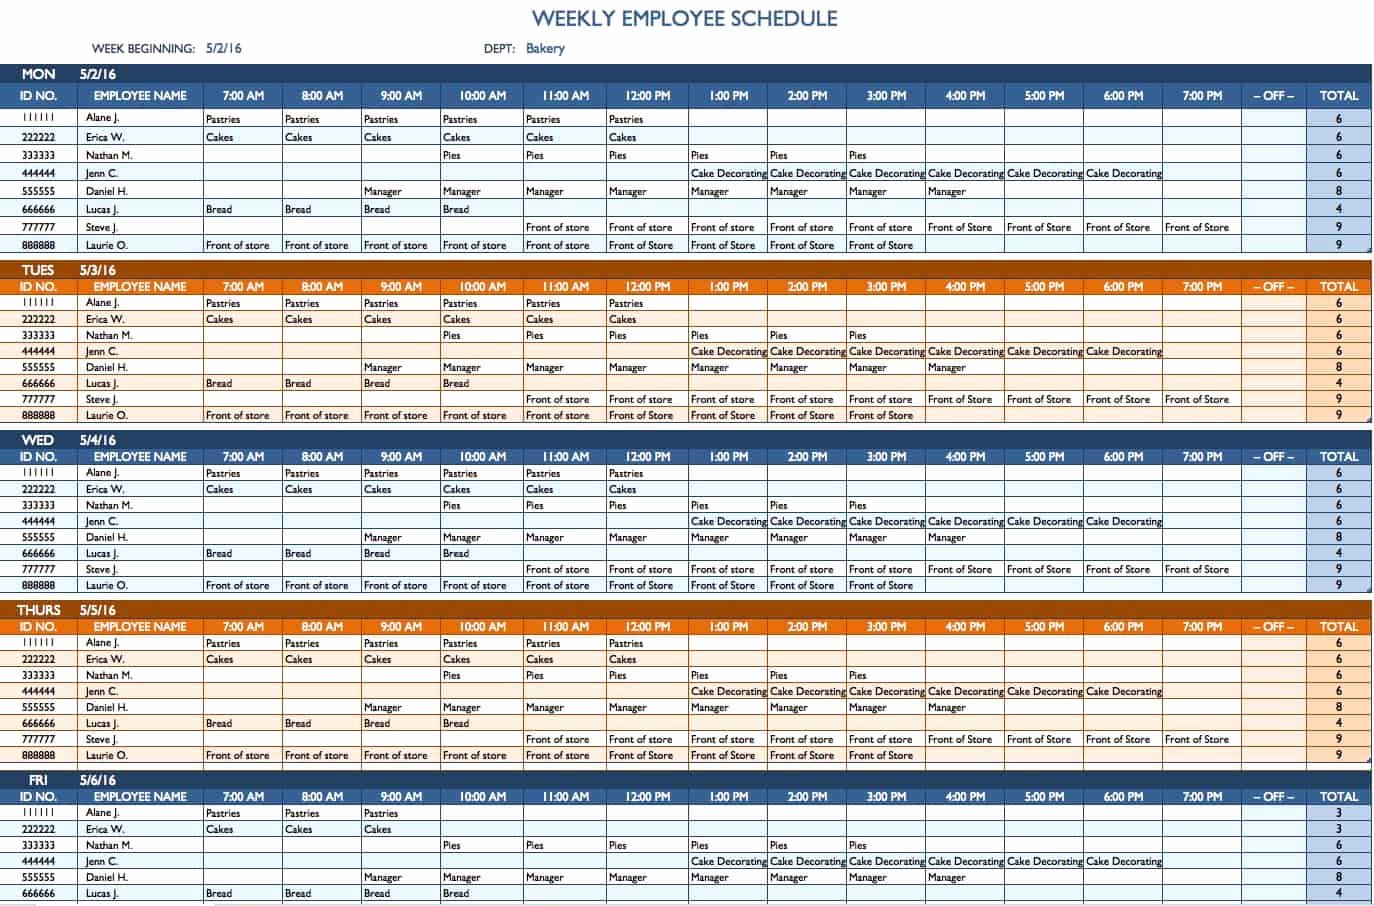 Employee Schedule Template Excel Beautiful Free Weekly Schedule Templates for Excel Smartsheet